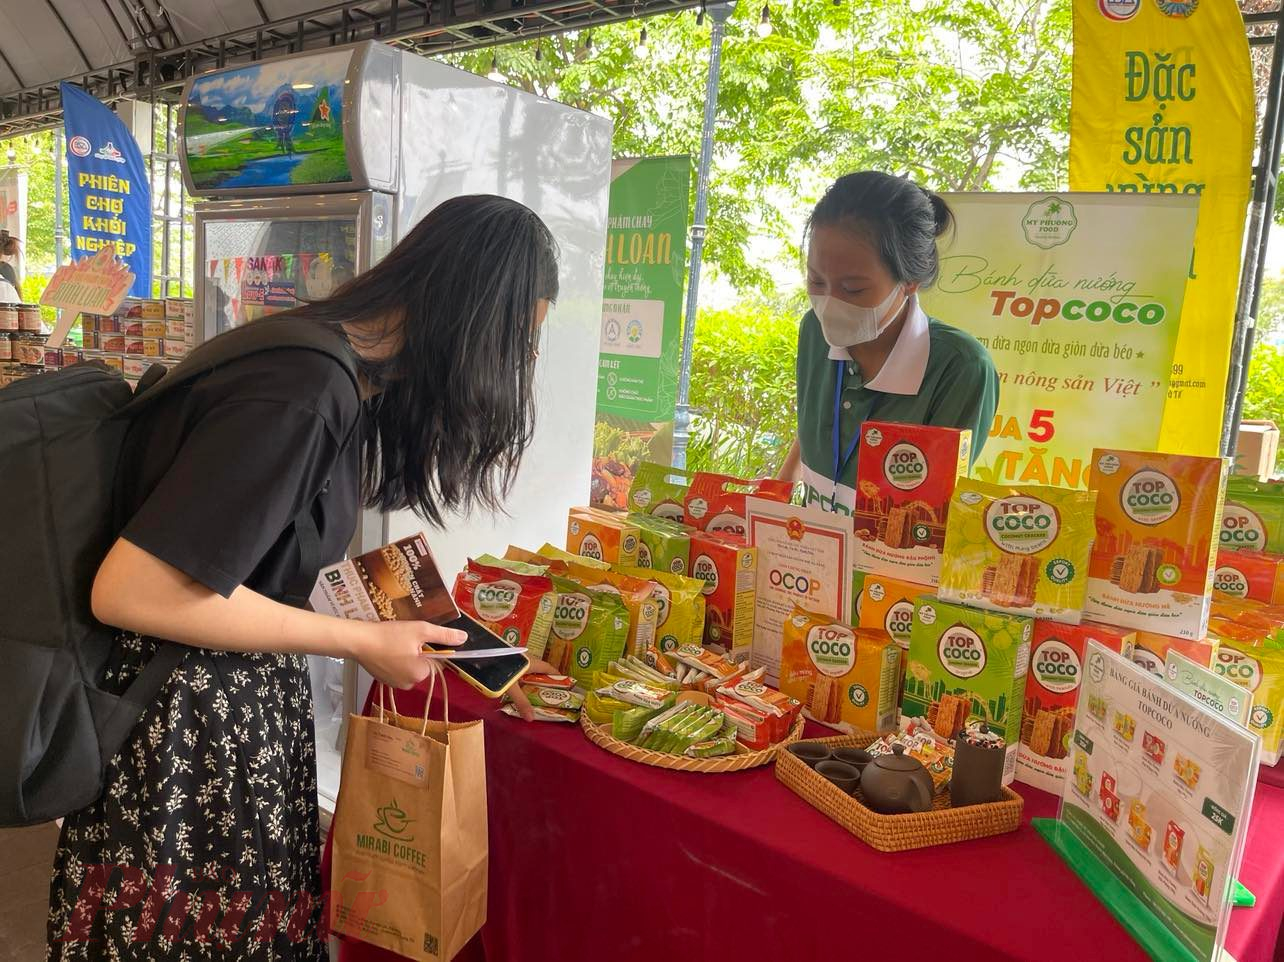 Đặc sản bánh dừa nướng Top Coco của Đà Nẵng đạt chứng nhận sản phẩm OCOP 4 sao (25.000 - 35.000 đồng/hộp đã được xuất khẩu qua nhiều nước (